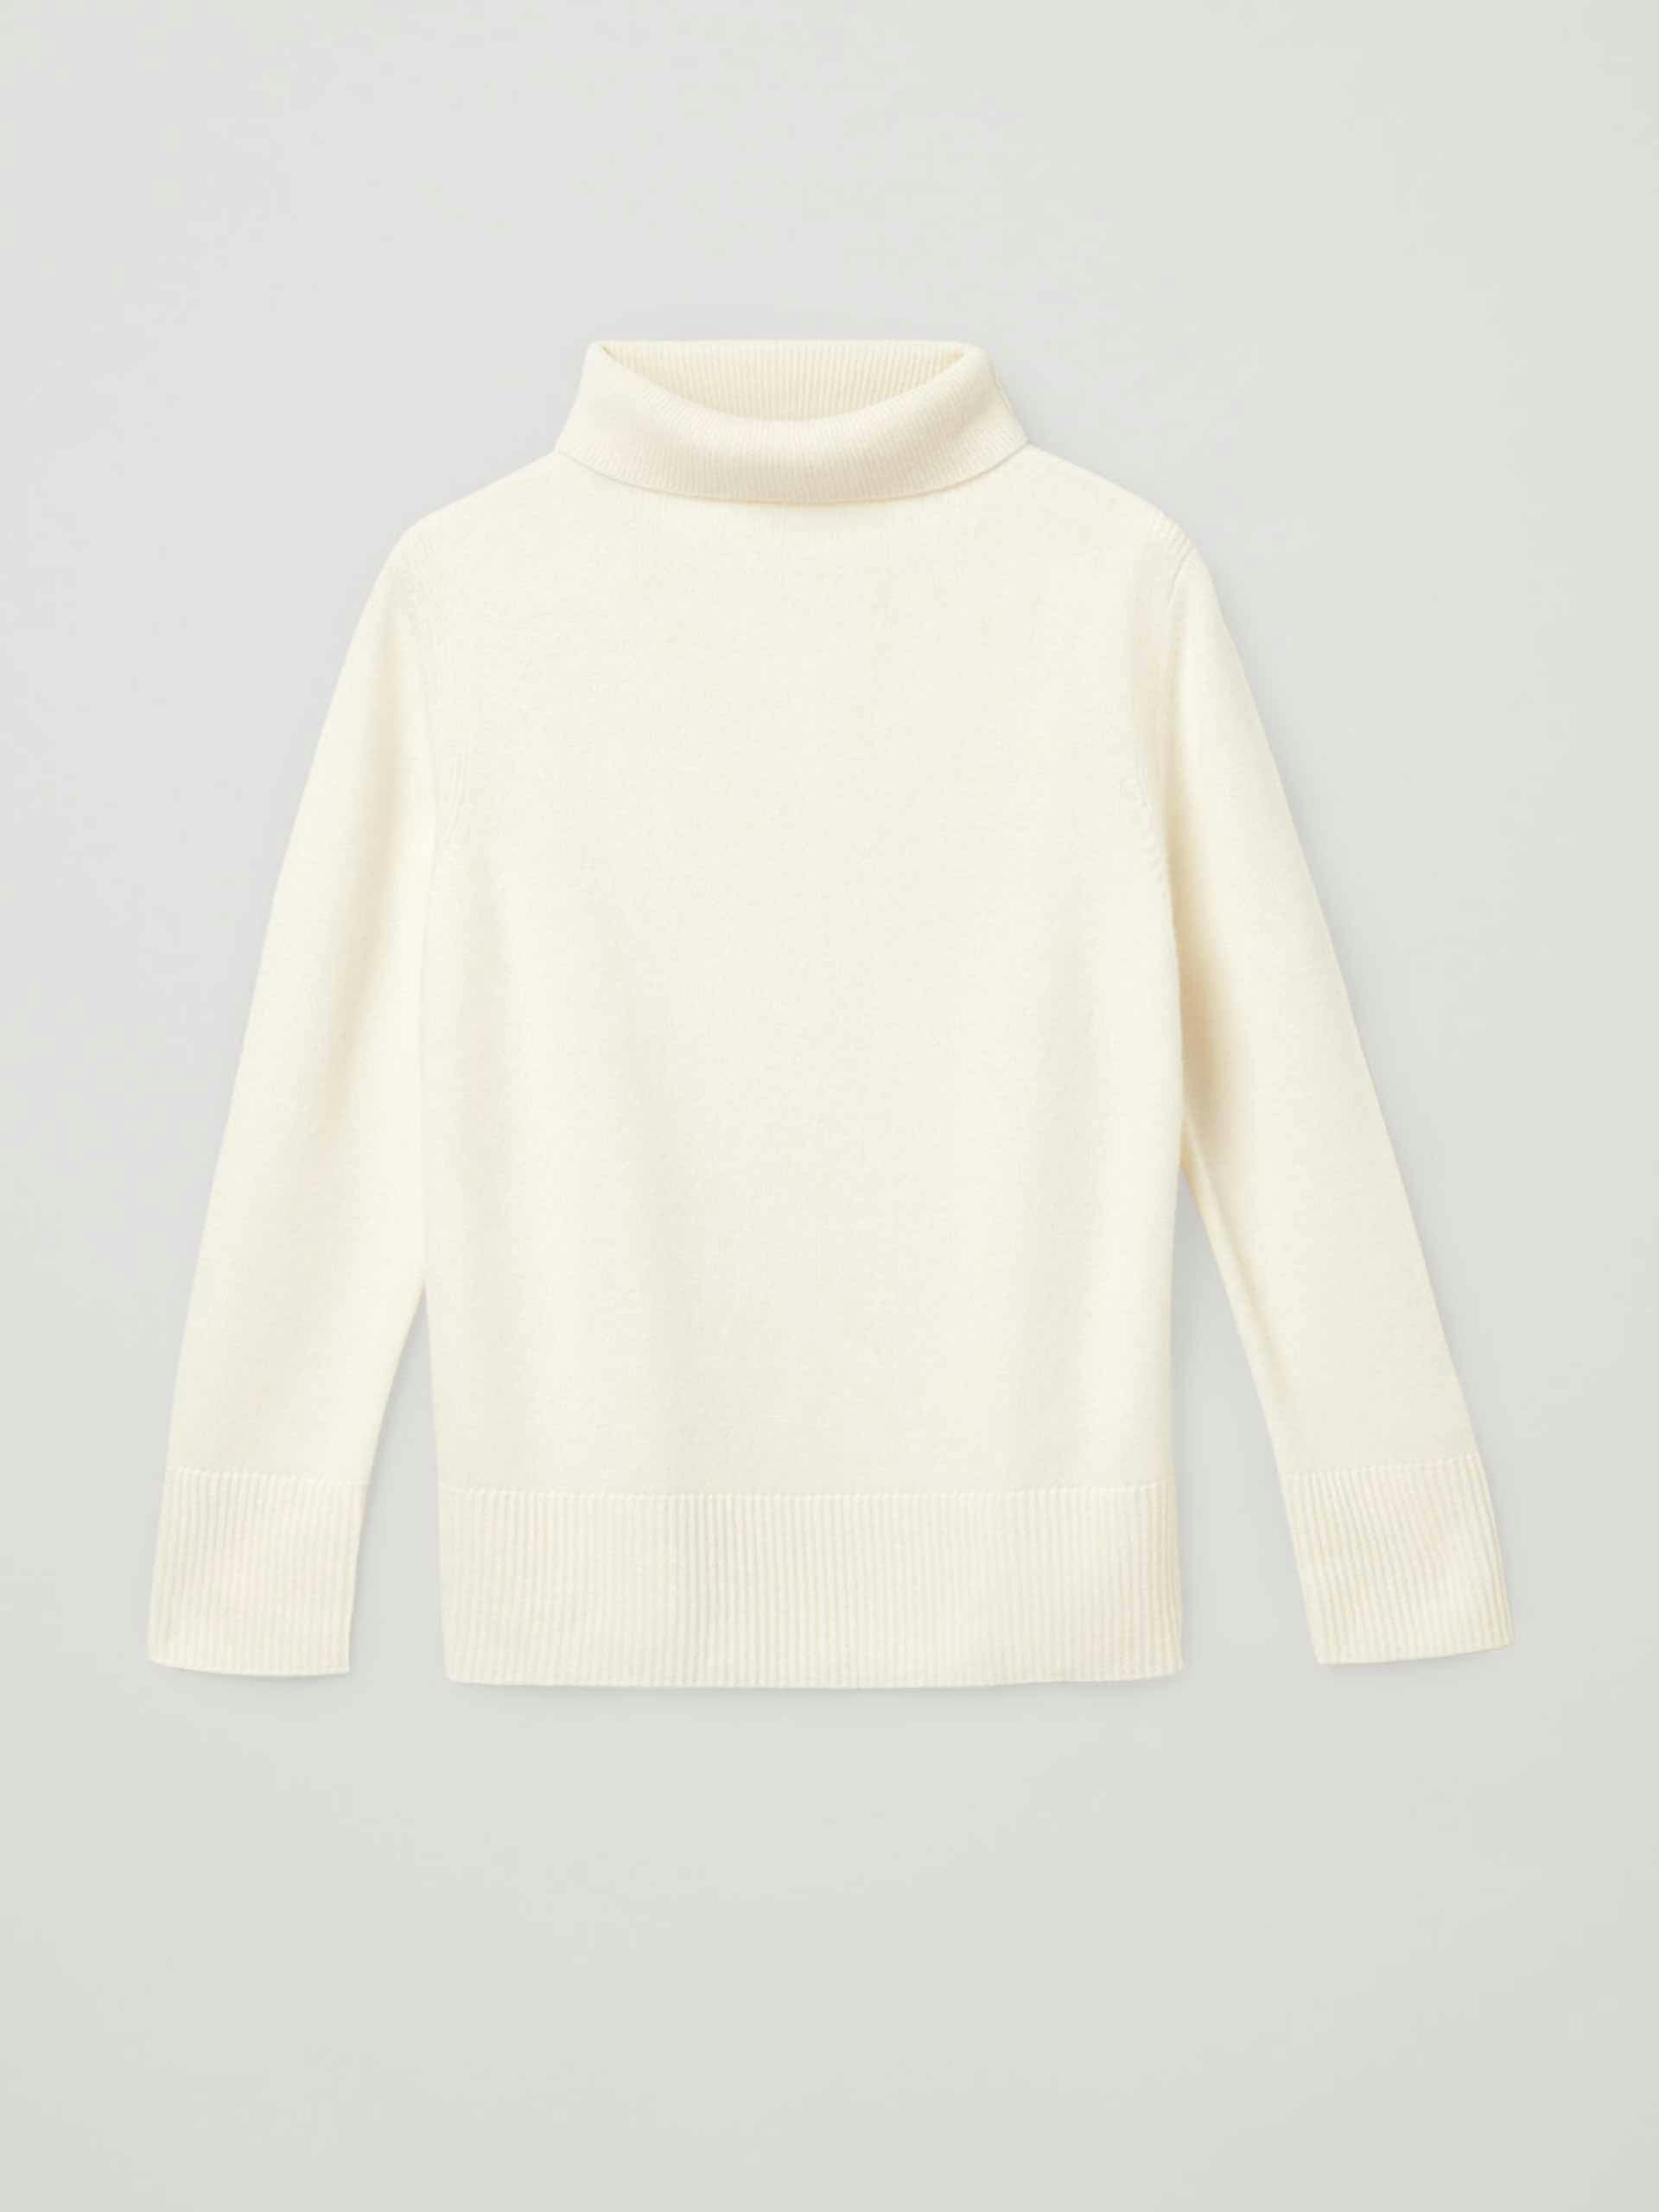 White cashmere jumper